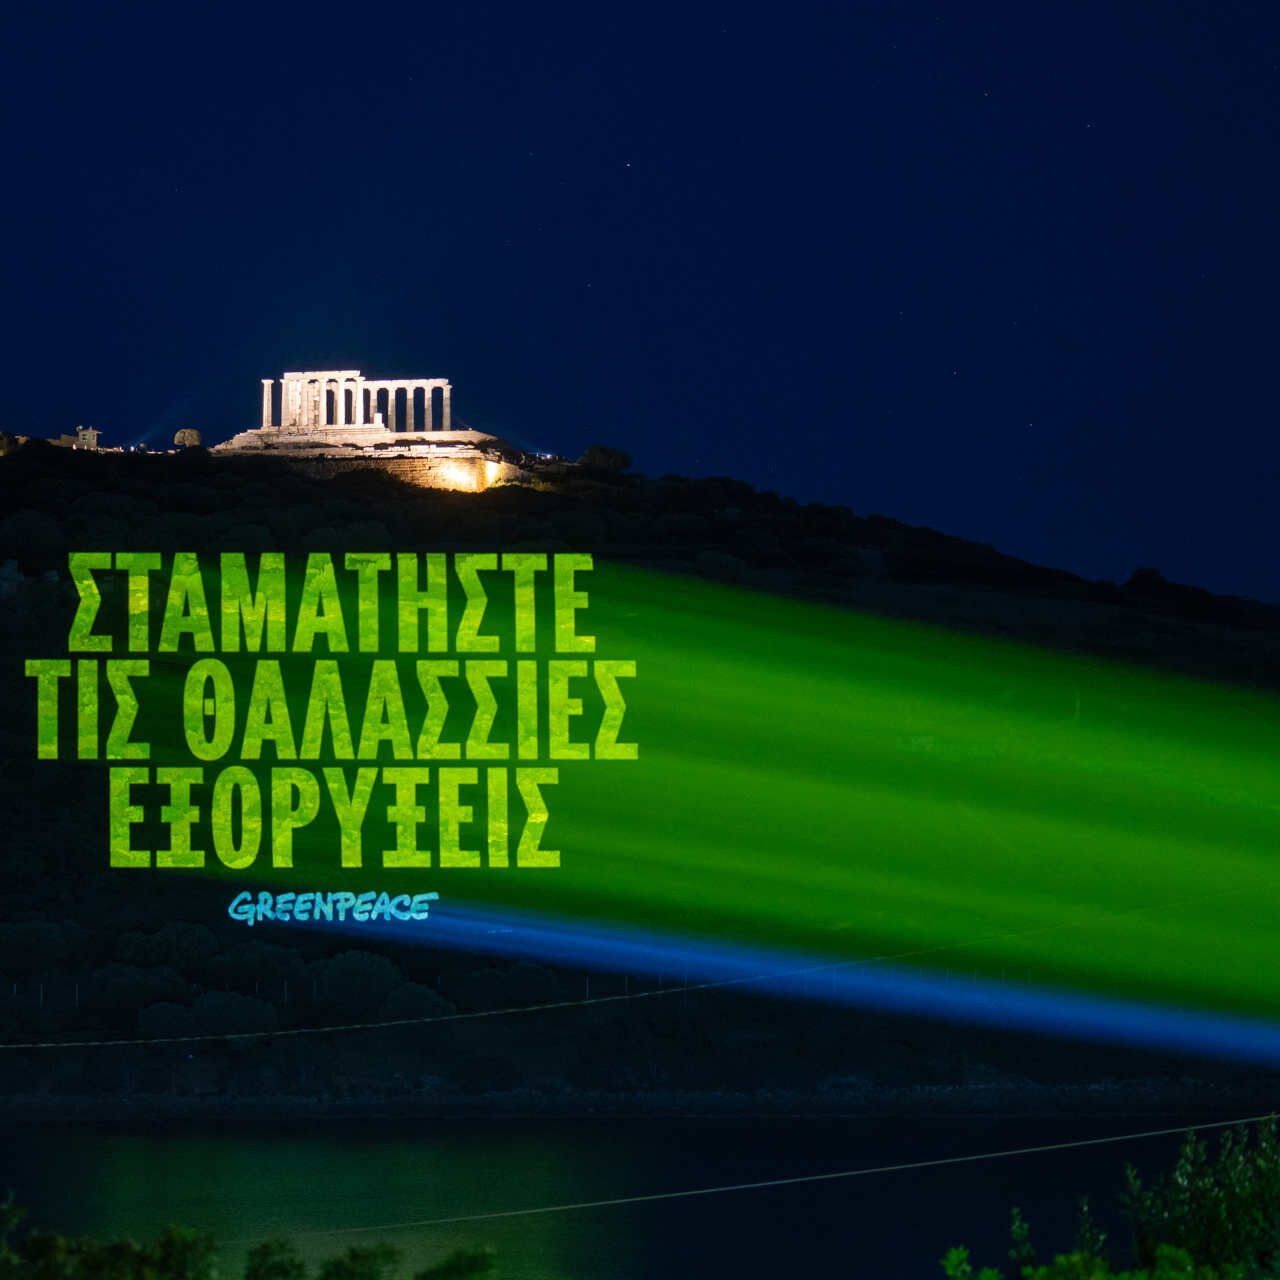 Grekland: meddelandet på grekiska som lyder